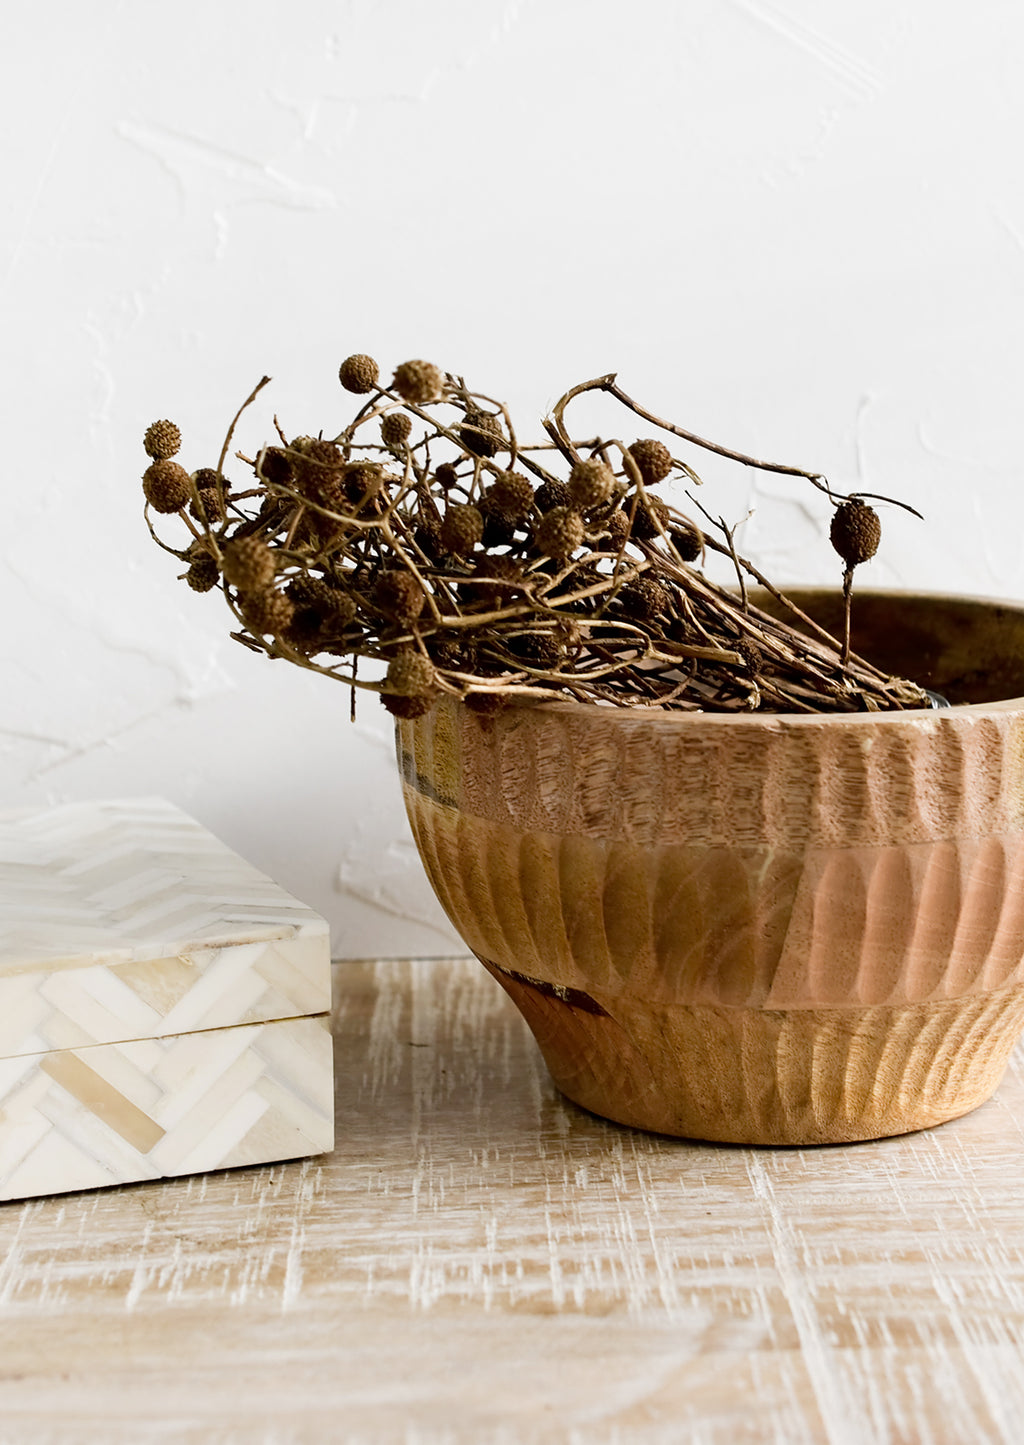 Medium: A wooden bowl housing dried seedpod bundle.